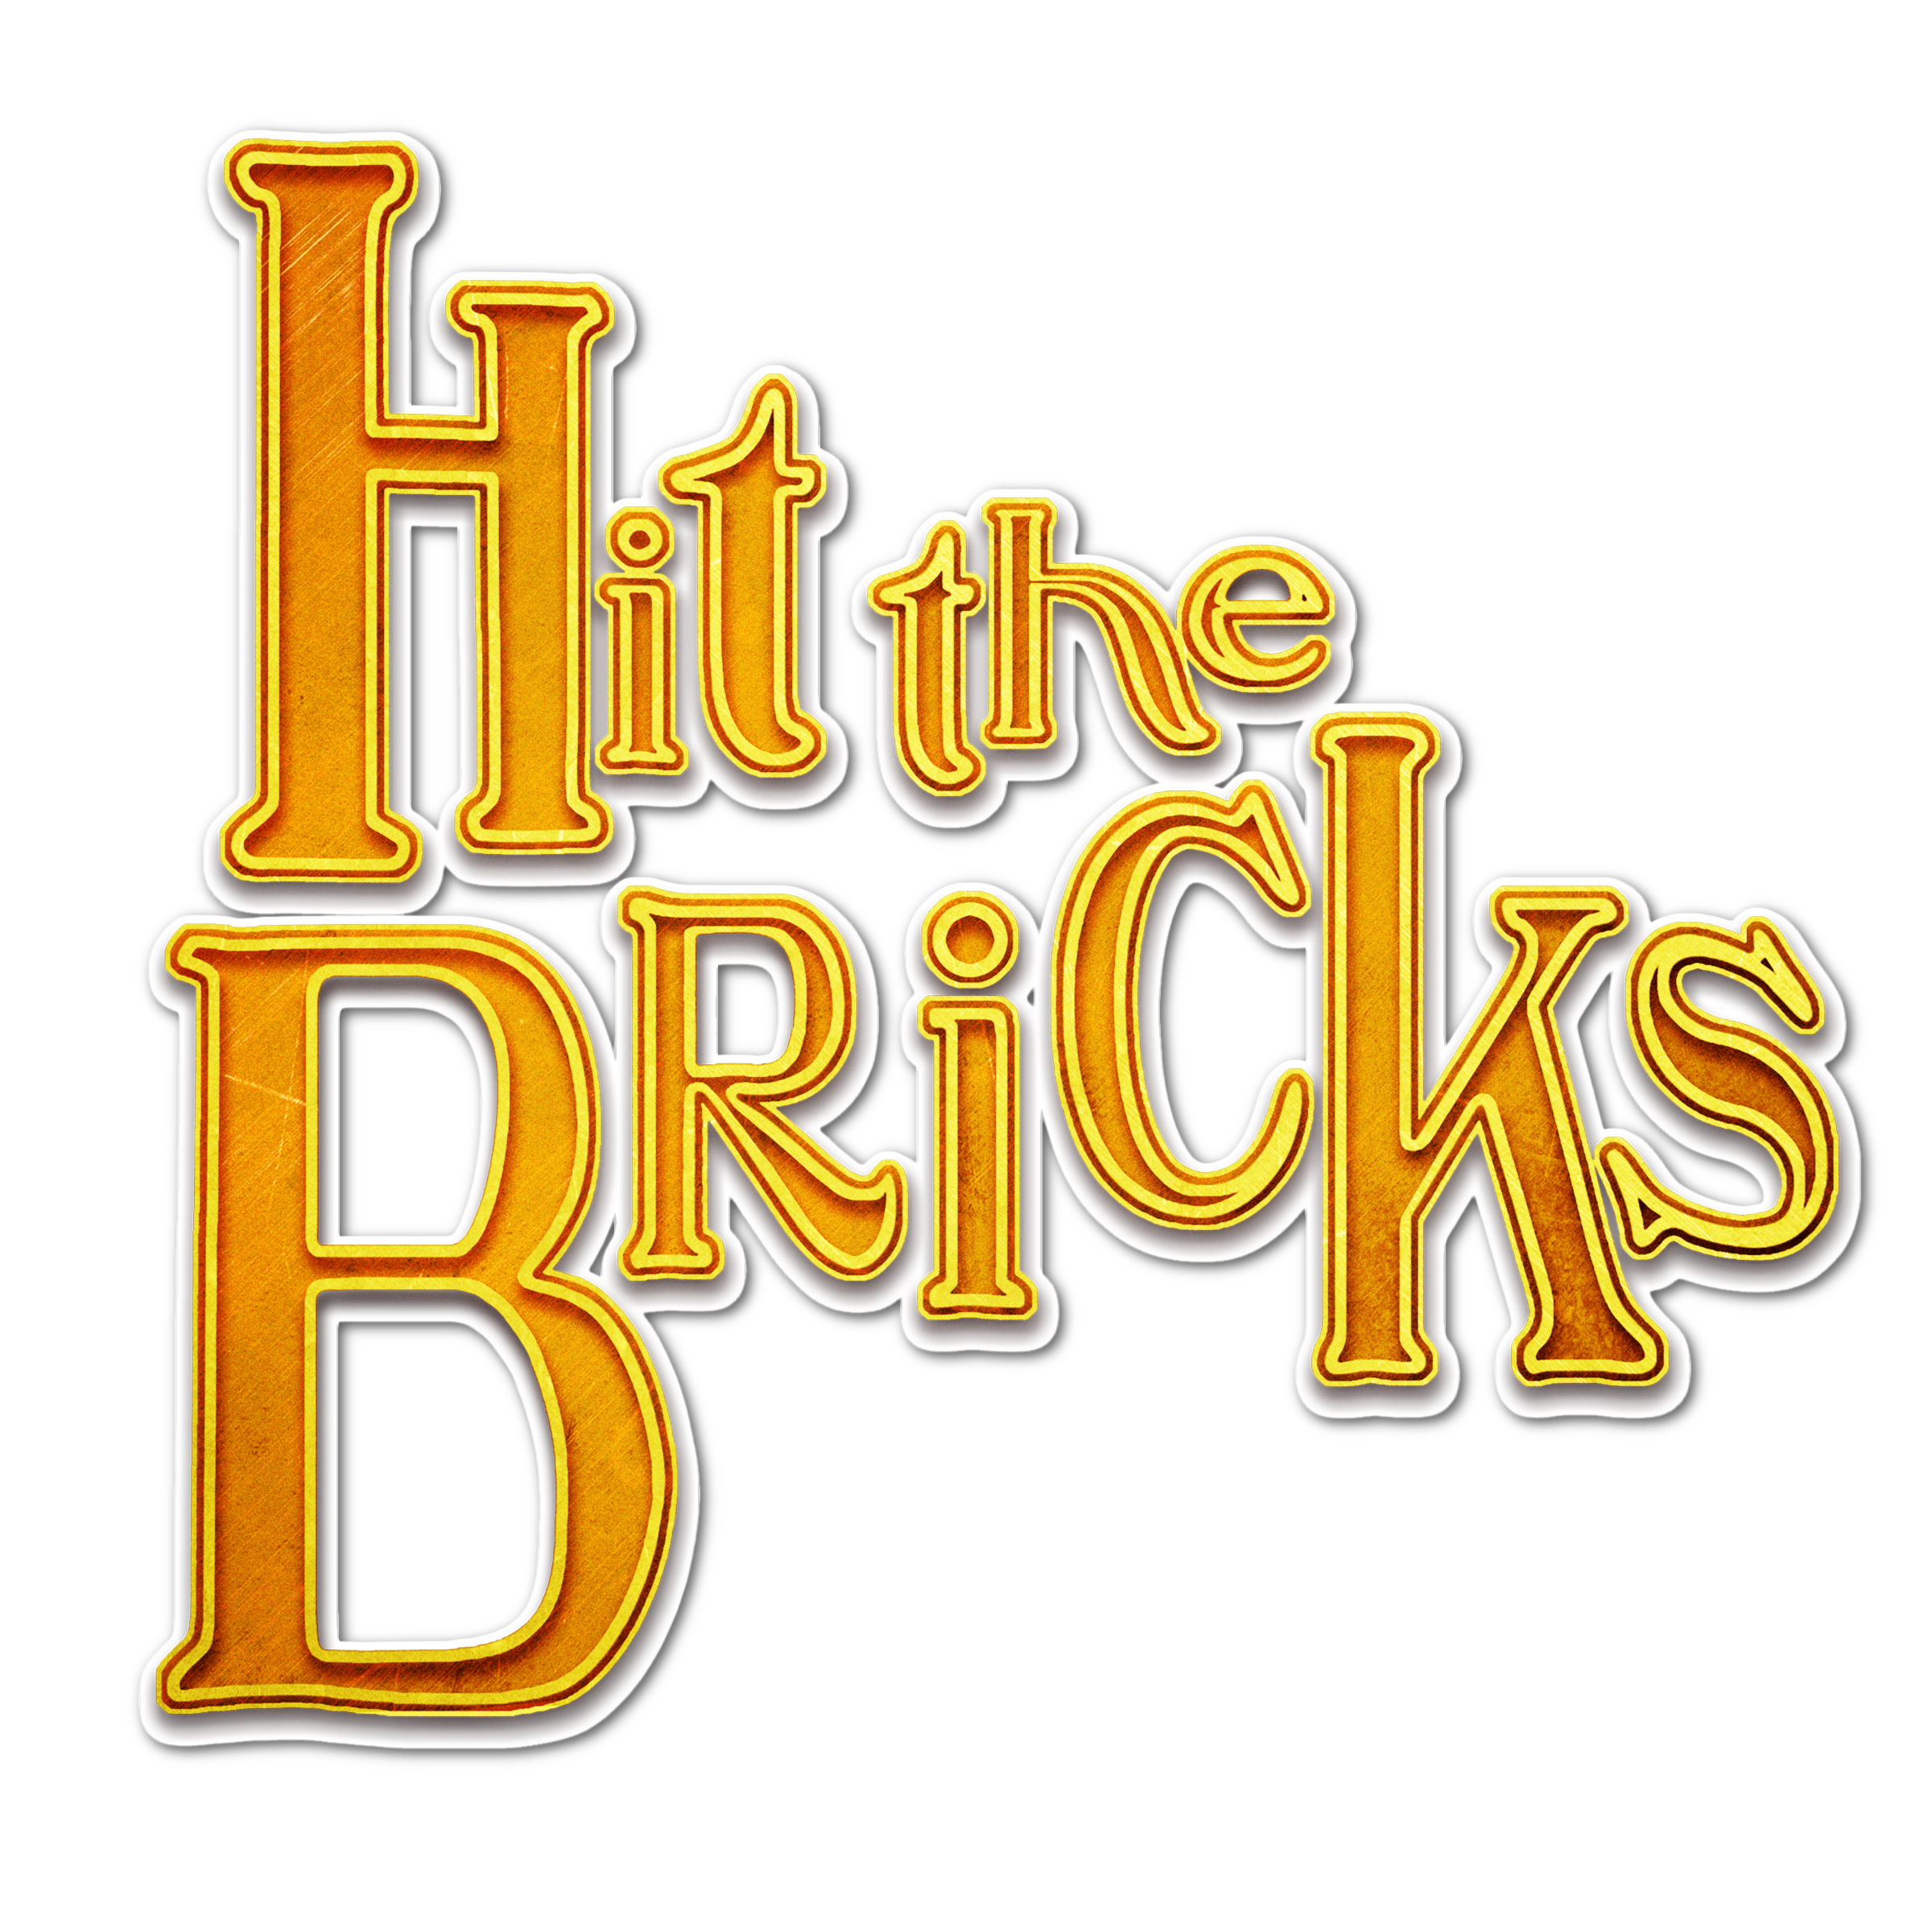 Hit the Bricks